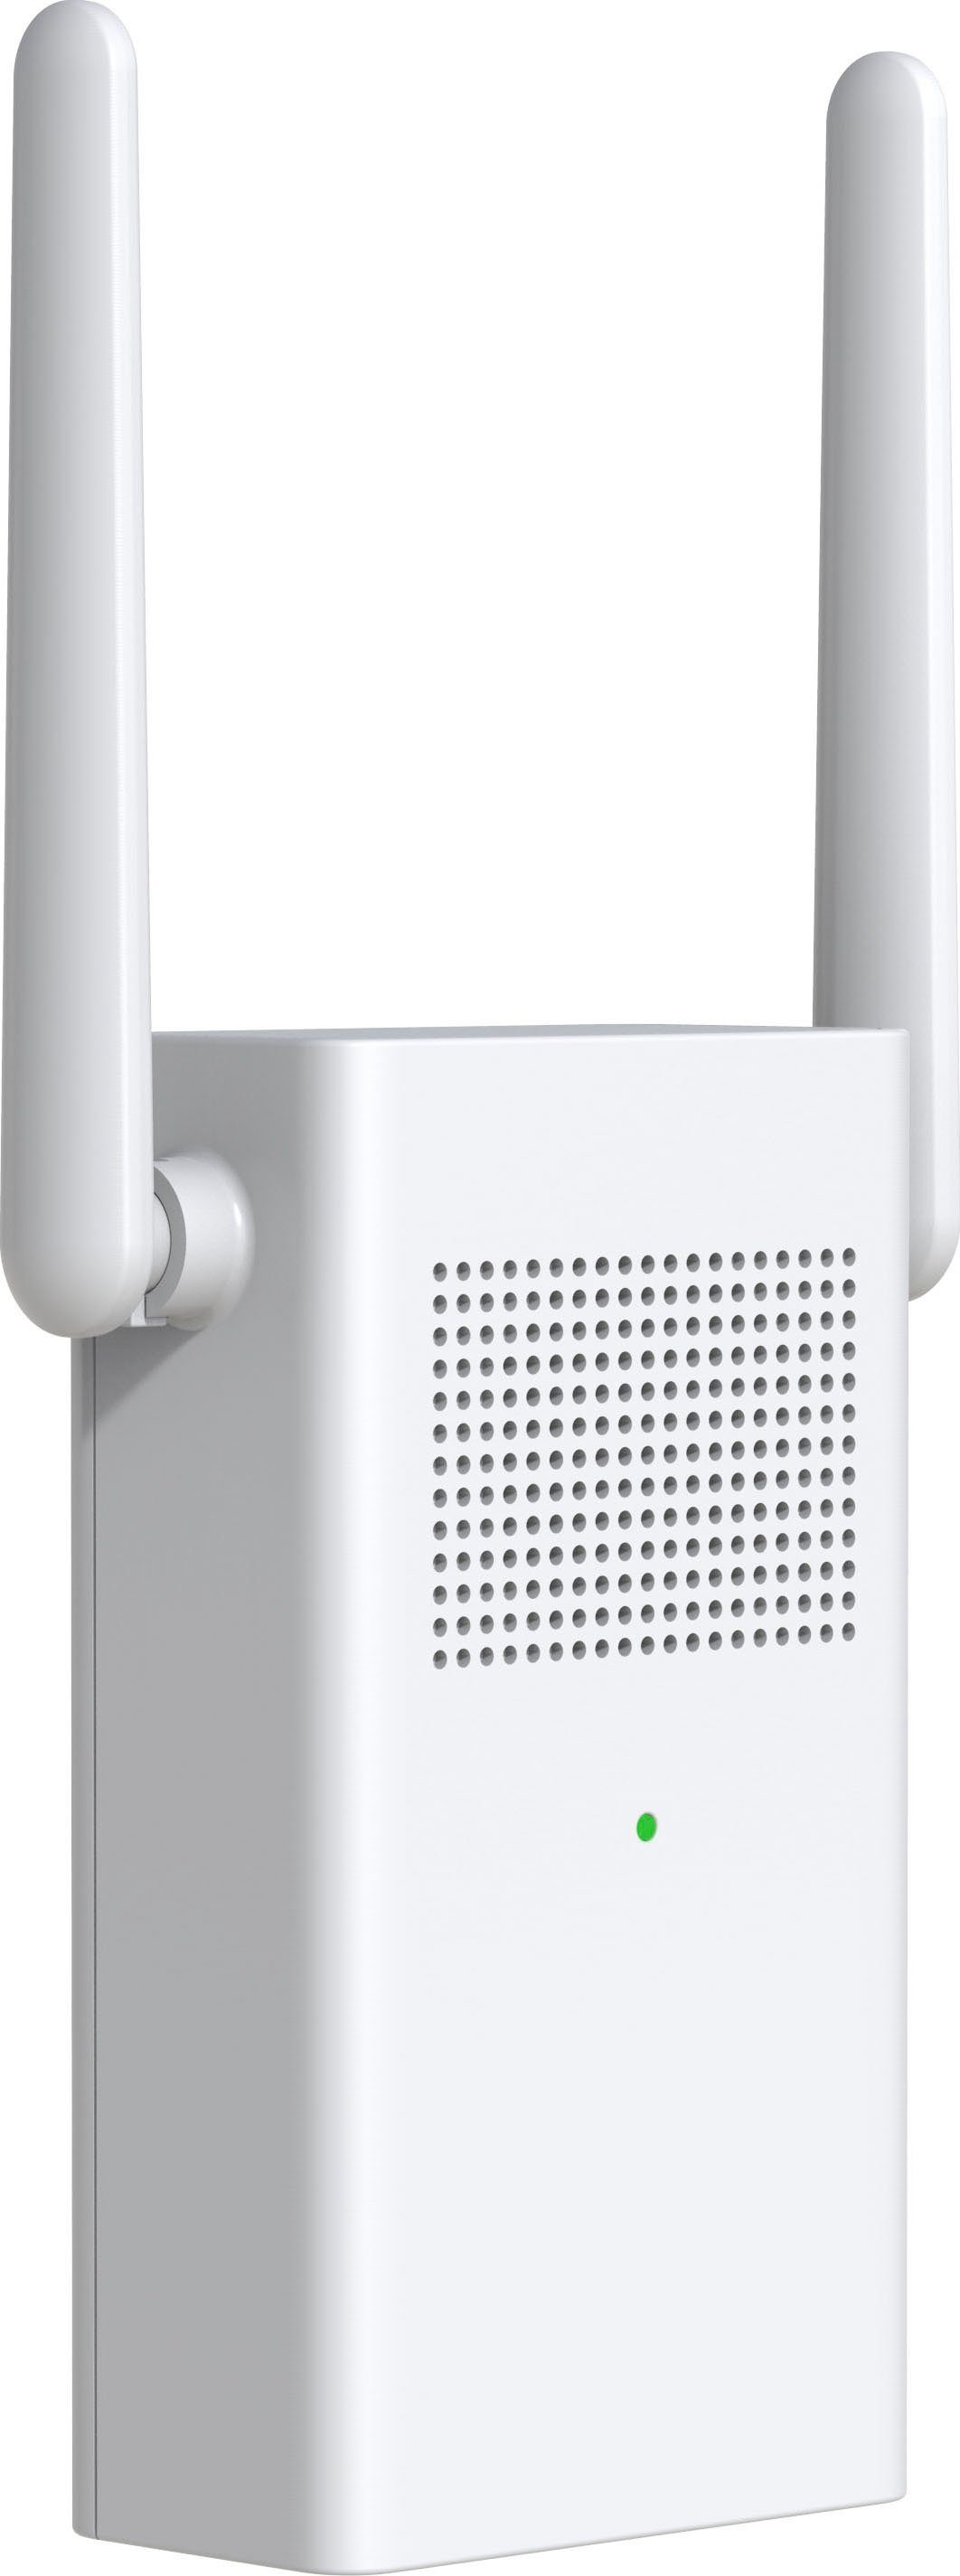 (Außenbereich) Smart Überwachungskamera Kit DB60 Kamera-Türklingel Imou